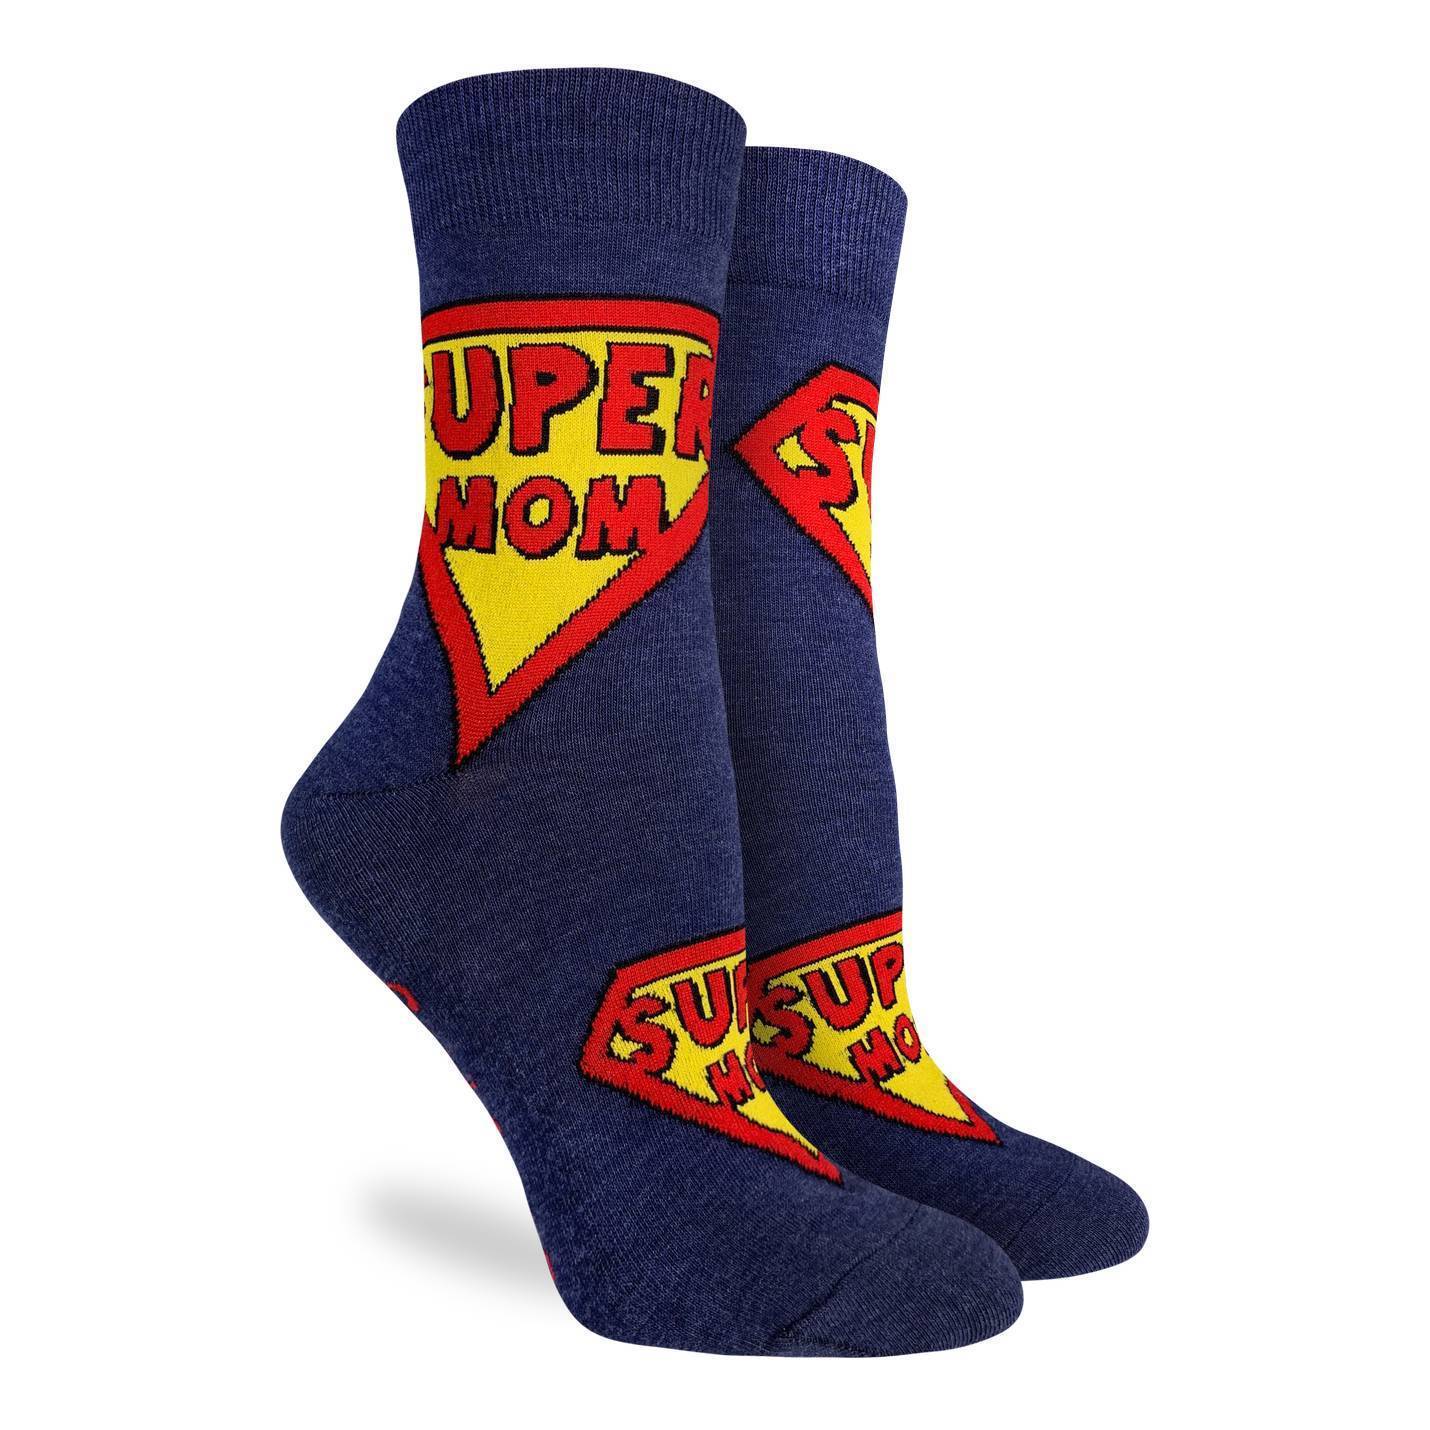 Socks - Women's Crew - Super Mom